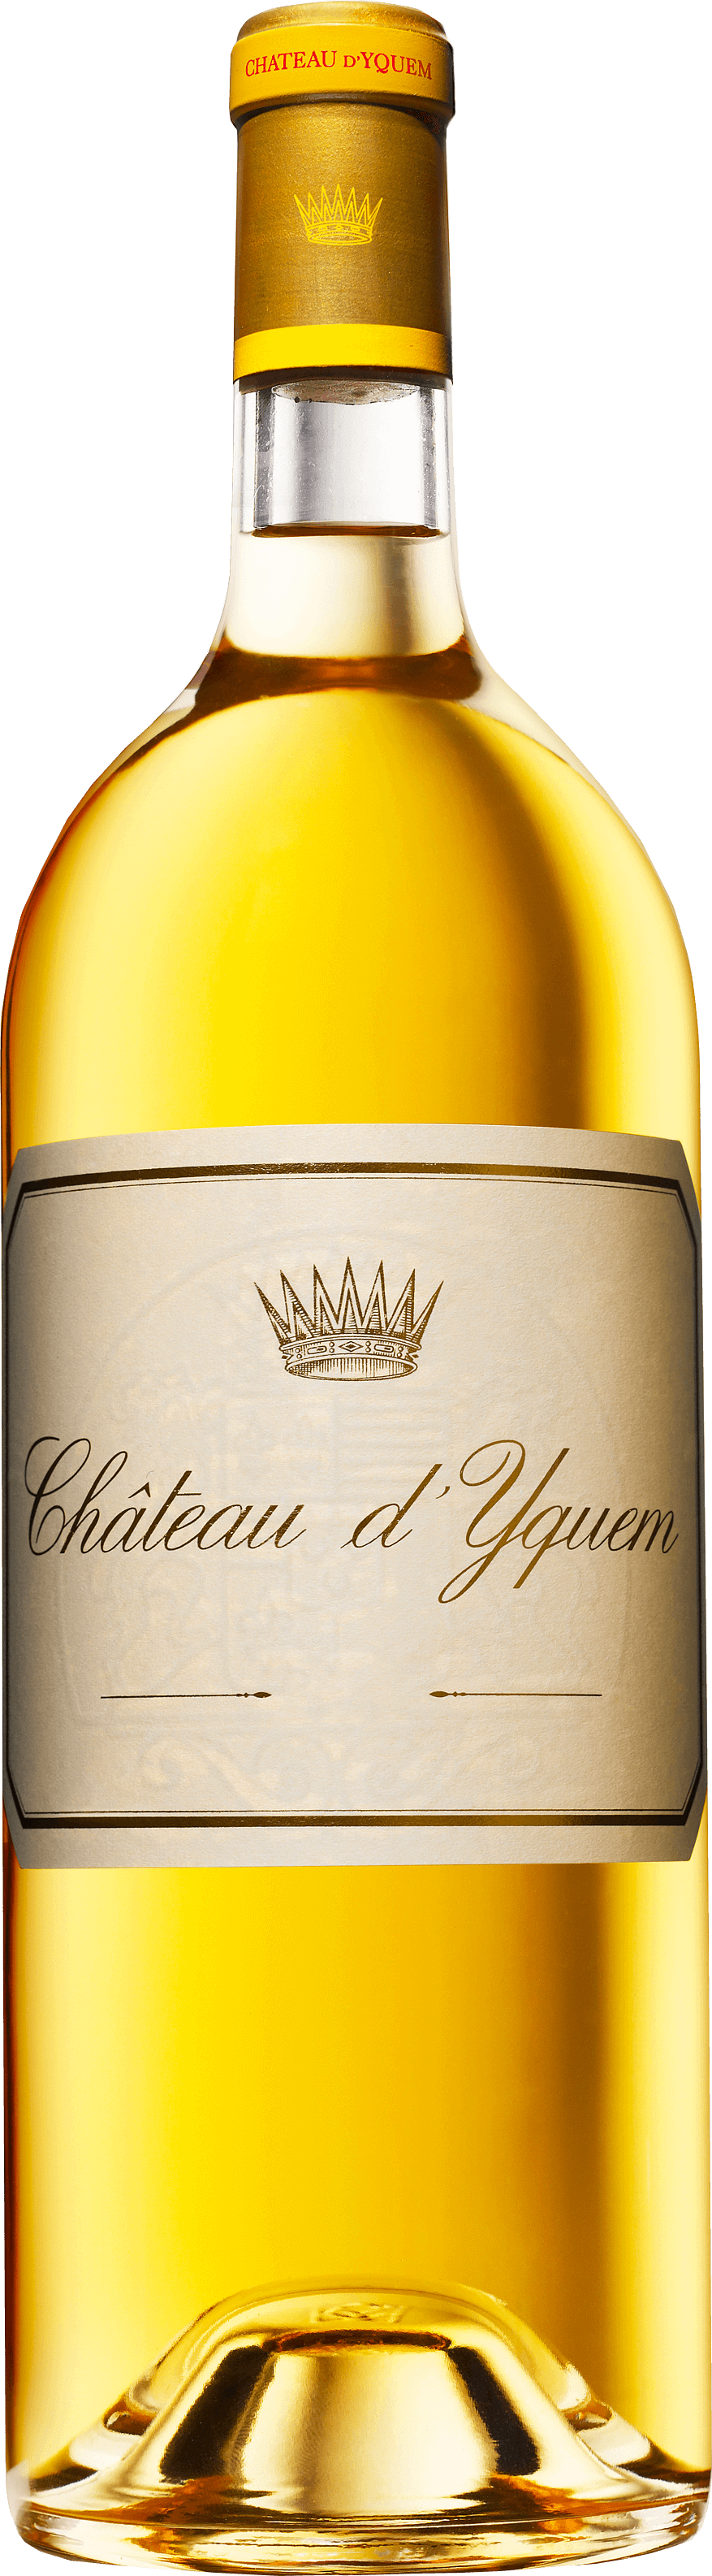 Yquem 1983 1er Cru Suprieur Sauternes, Bordeaux blanc